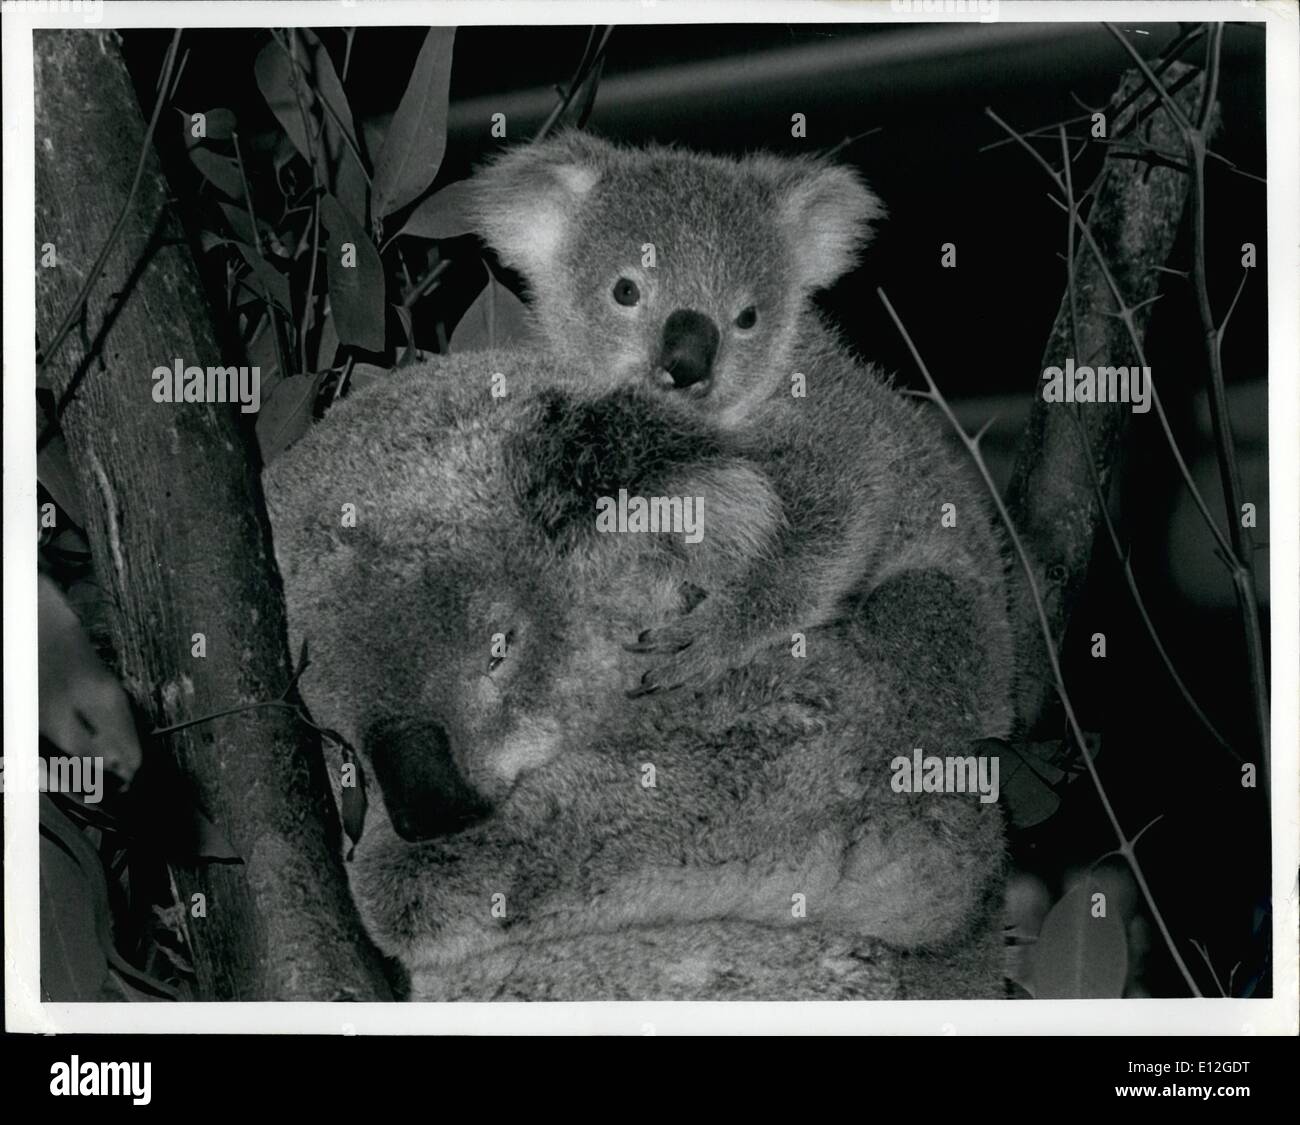 10. Januar 2012 - SPÄHT POOYA über the Cop der Mutter Matilda Fell gesäumten Ohren bei seiner Premiere Auftritt vor der Öffentlichkeit Donnerstag (Aug. (6) im Zoo von San Diego. Das neue Koala-Baby und seine Mutter werden auf einer closed Circuit Television in den Zoo Koala Abbildung gesehen werden, während beide als Vorsichtsmaßnahme isoliert bis Pooya aufwächst. Pooya ist fast acht Monate alt und ist benannt nach einer australischen Stadt. Er ist das 13. Mitglied der Zoo Koala Kolonie. Der San Diego Zoo ist der einzige Ort in der Welt außerhalb von Australien Beuteltier Haworthia silbergrau auszustellen. Stockfoto